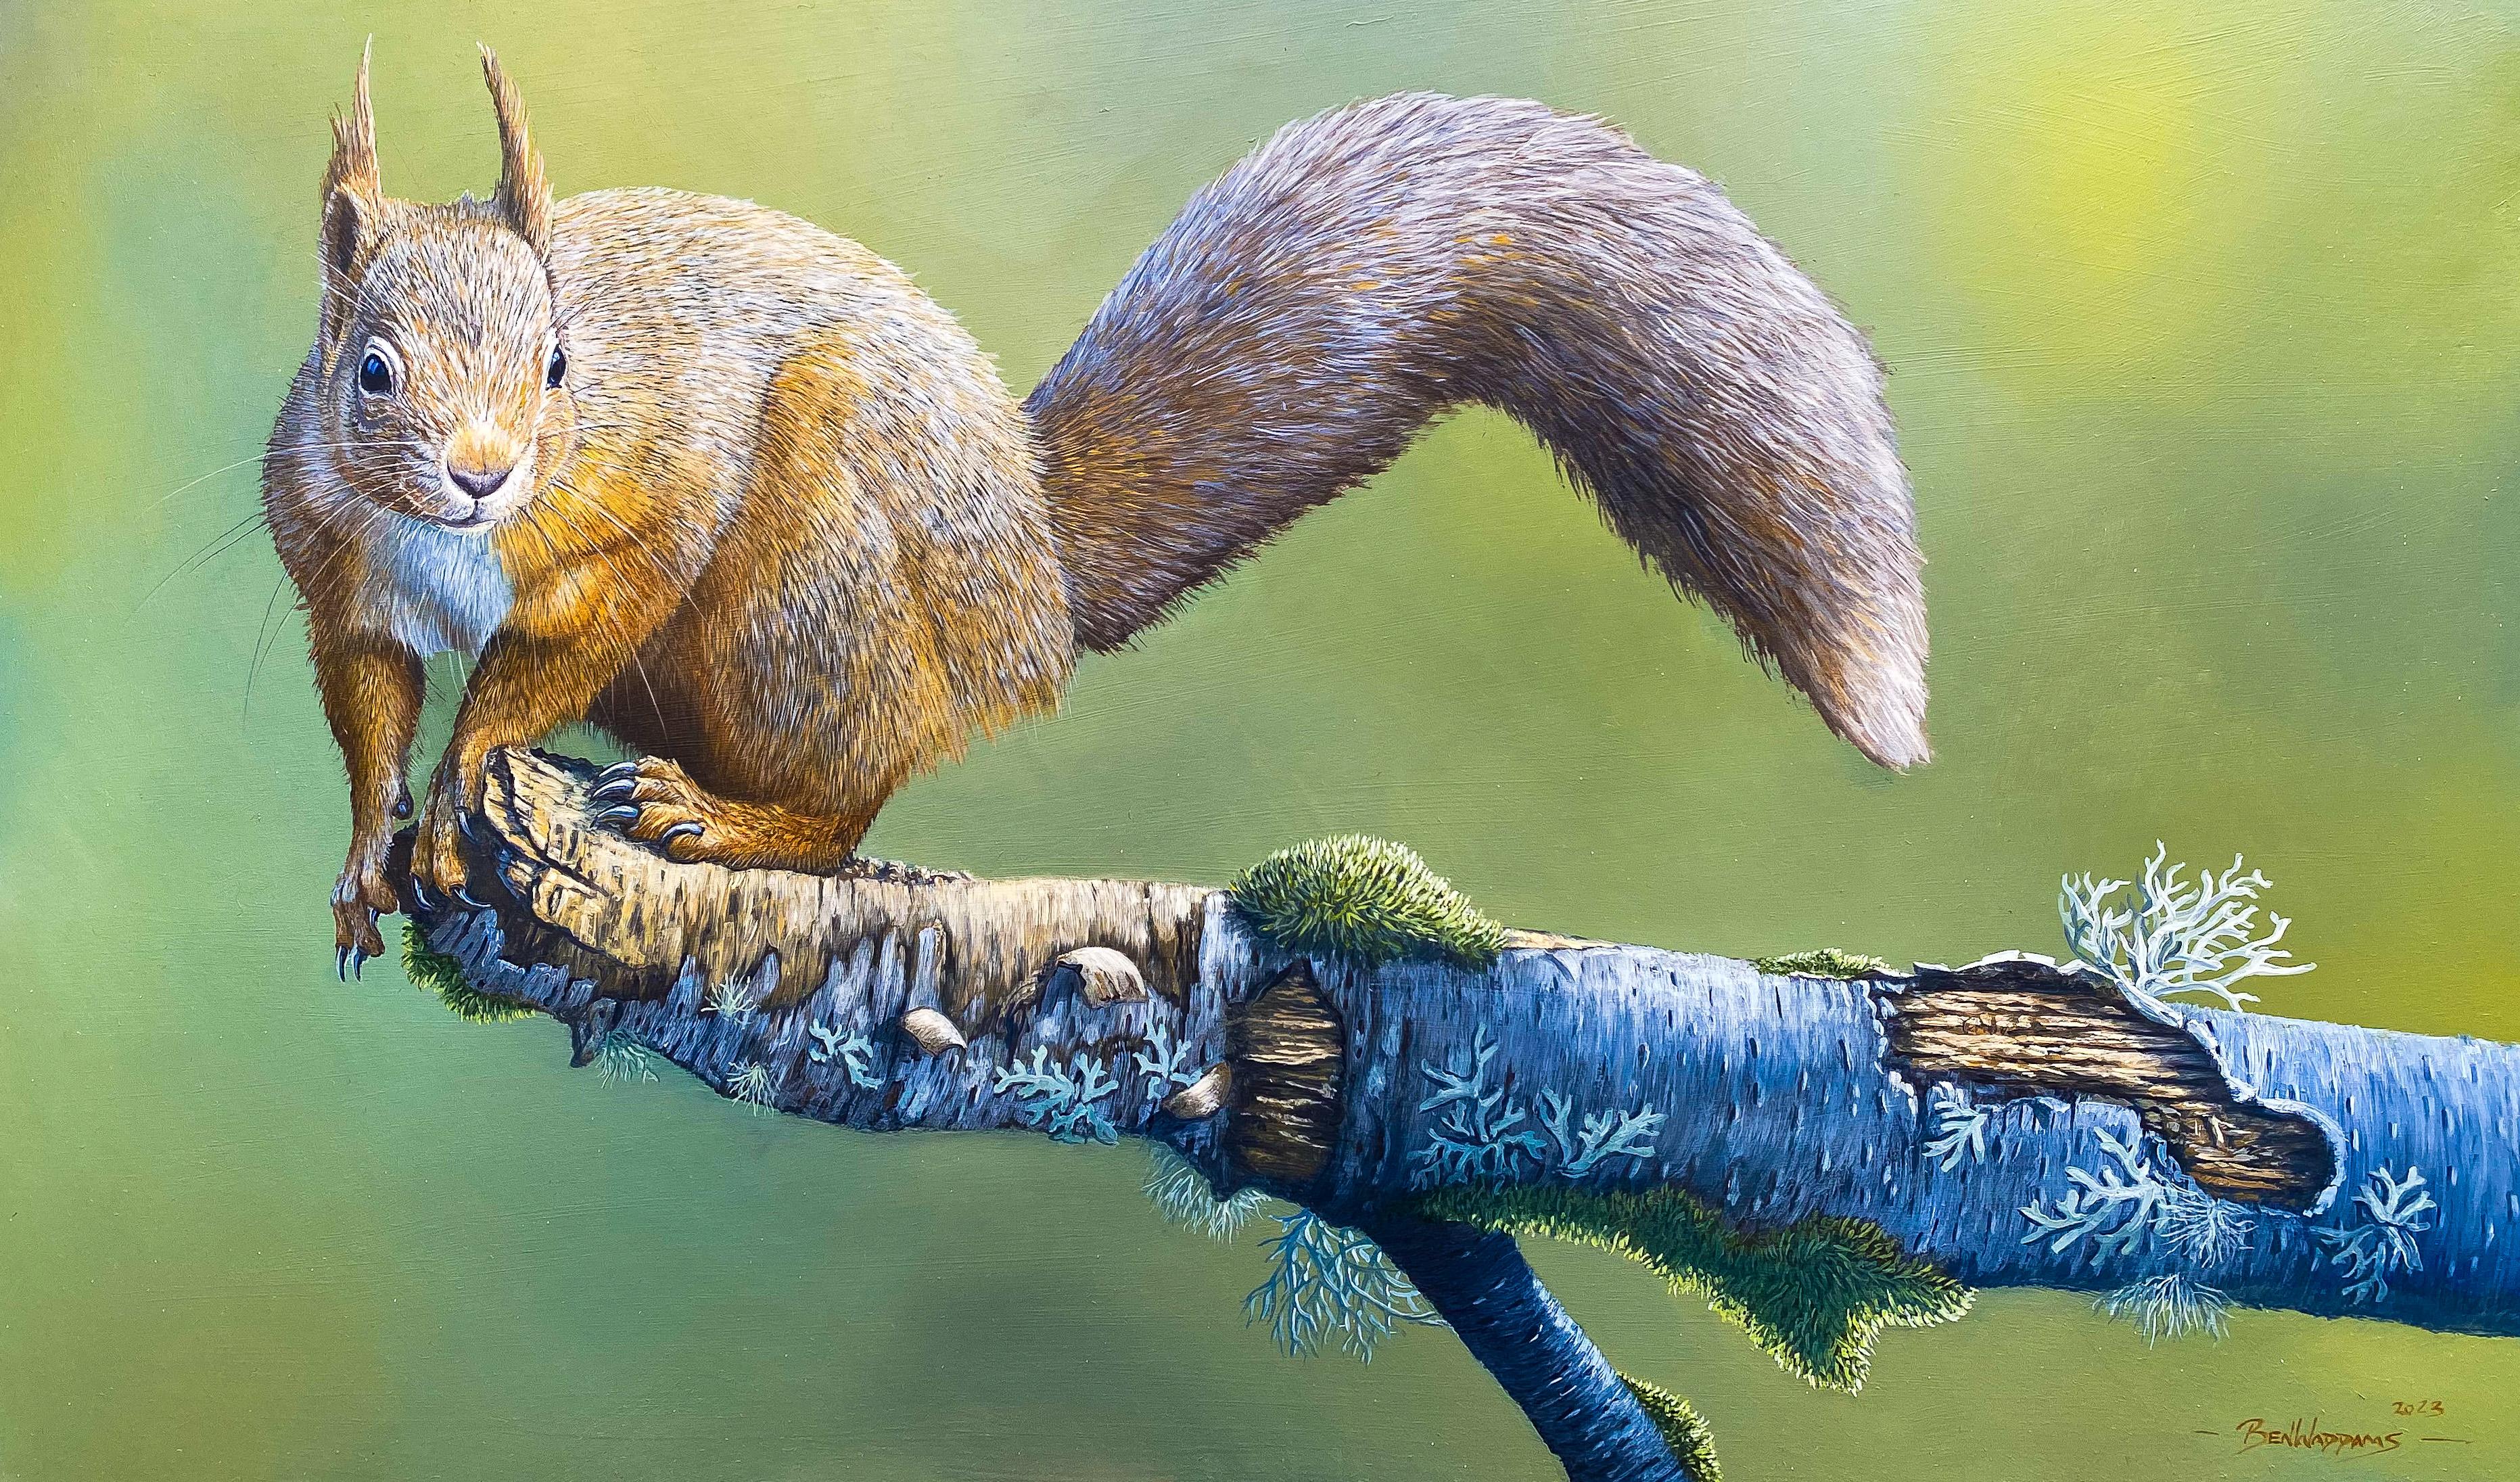 Ben Waddams Animal Painting – The End of the Road Fotorealistisches Gemälde eines roten Eichhörnchens auf einem Ast, grün